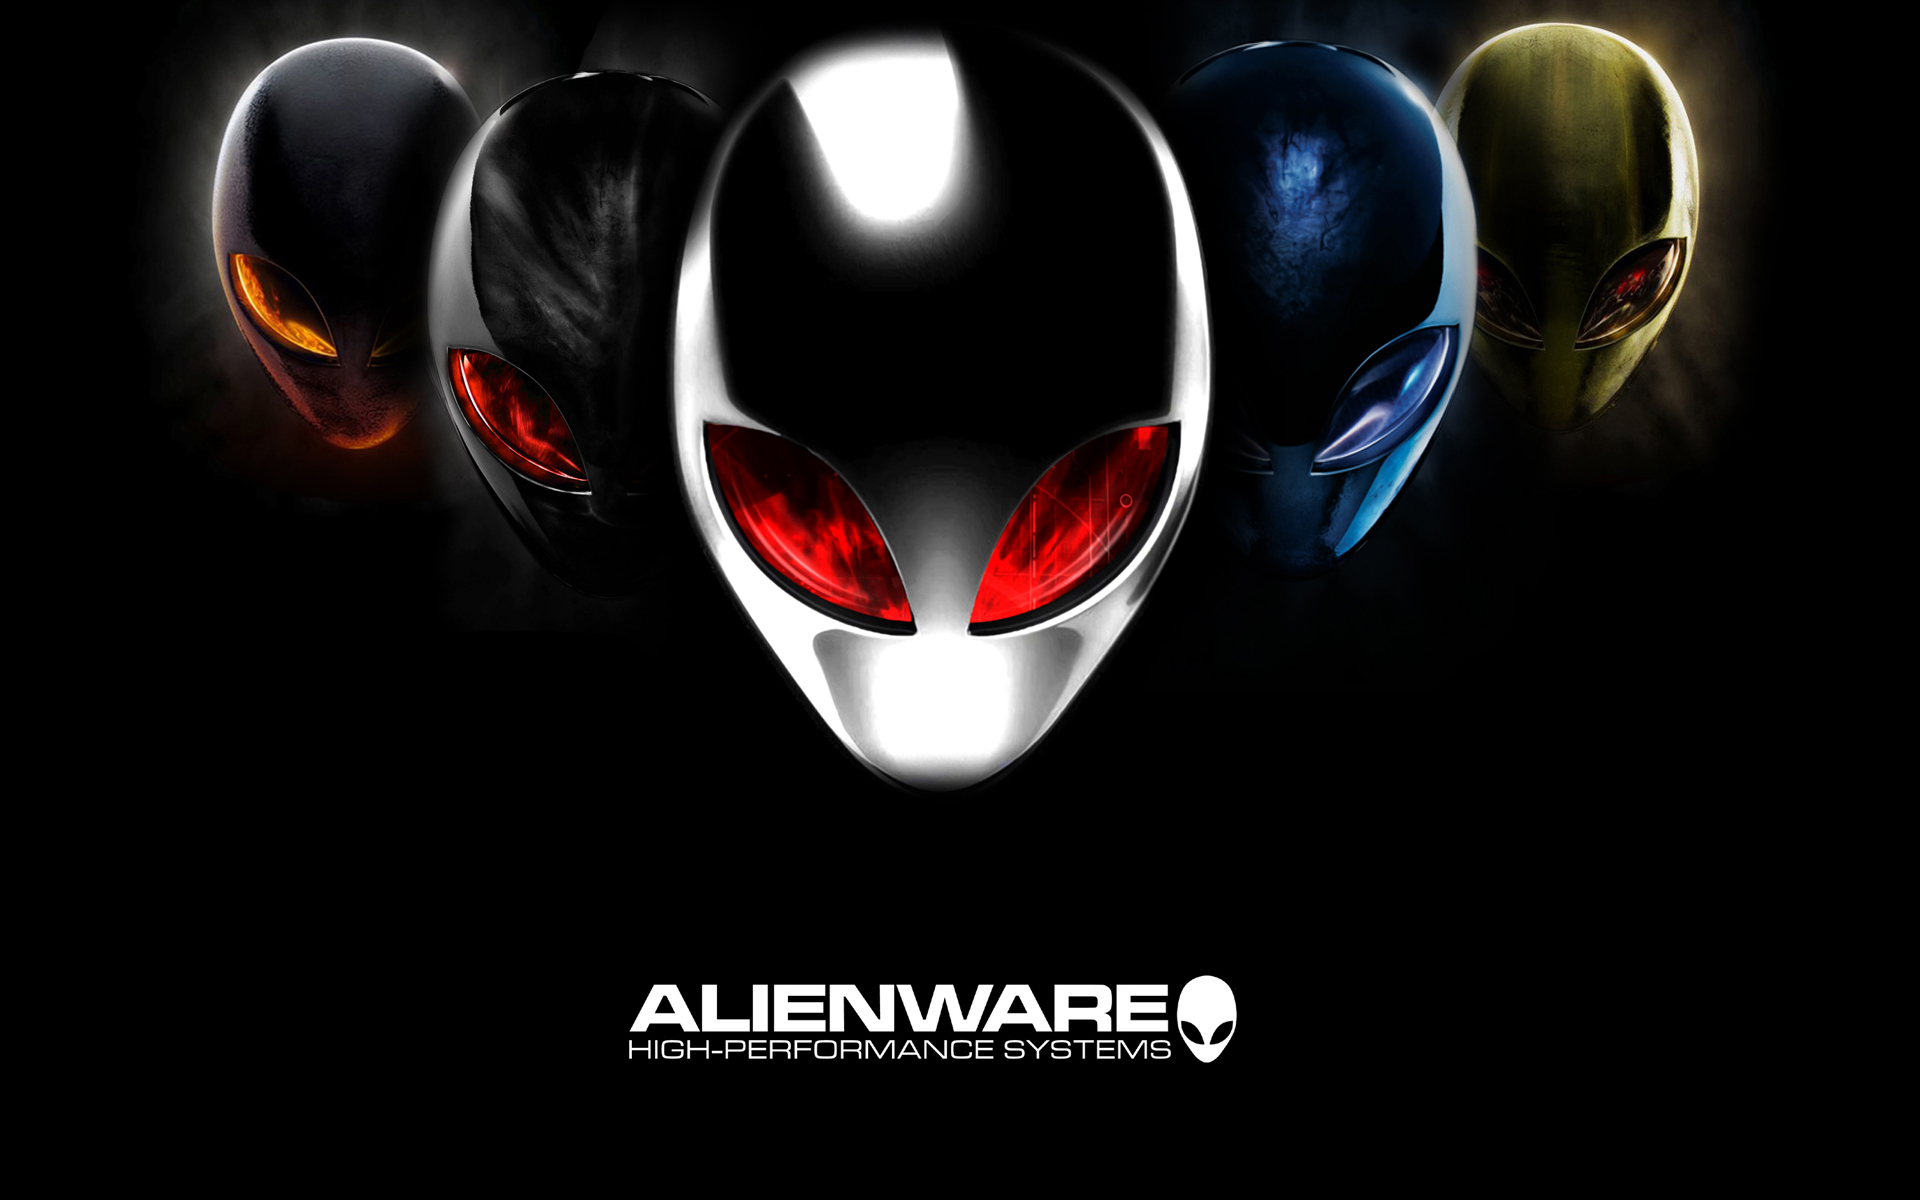 alienware wallpaper,helm,erfundener charakter,persönliche schutzausrüstung,grafikdesign,poster